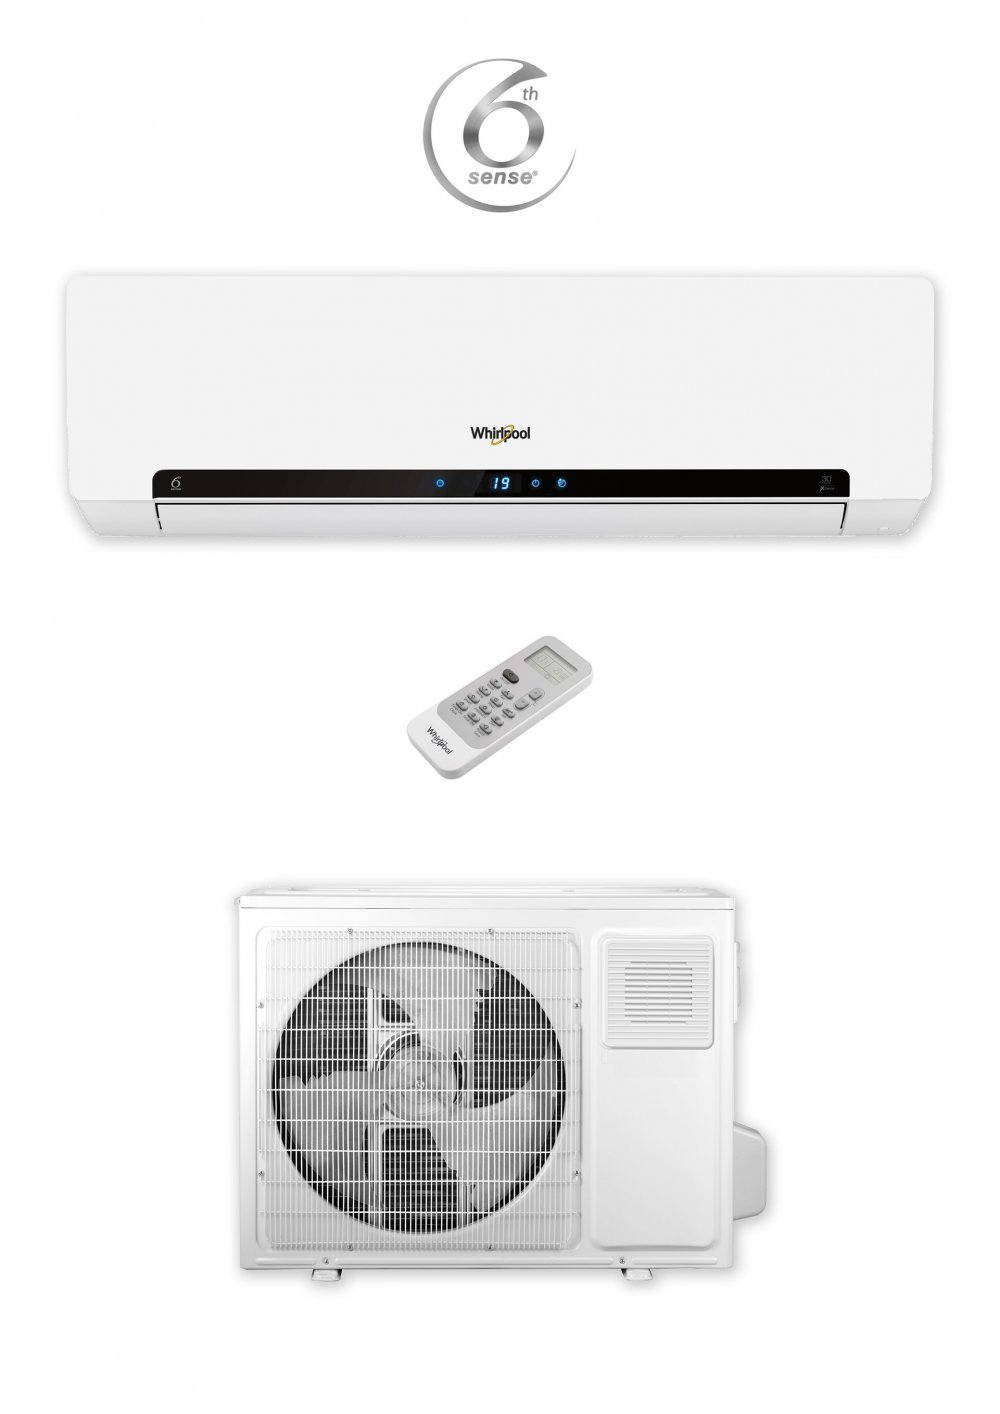 H/COL WAL 17800Btu Dual fan